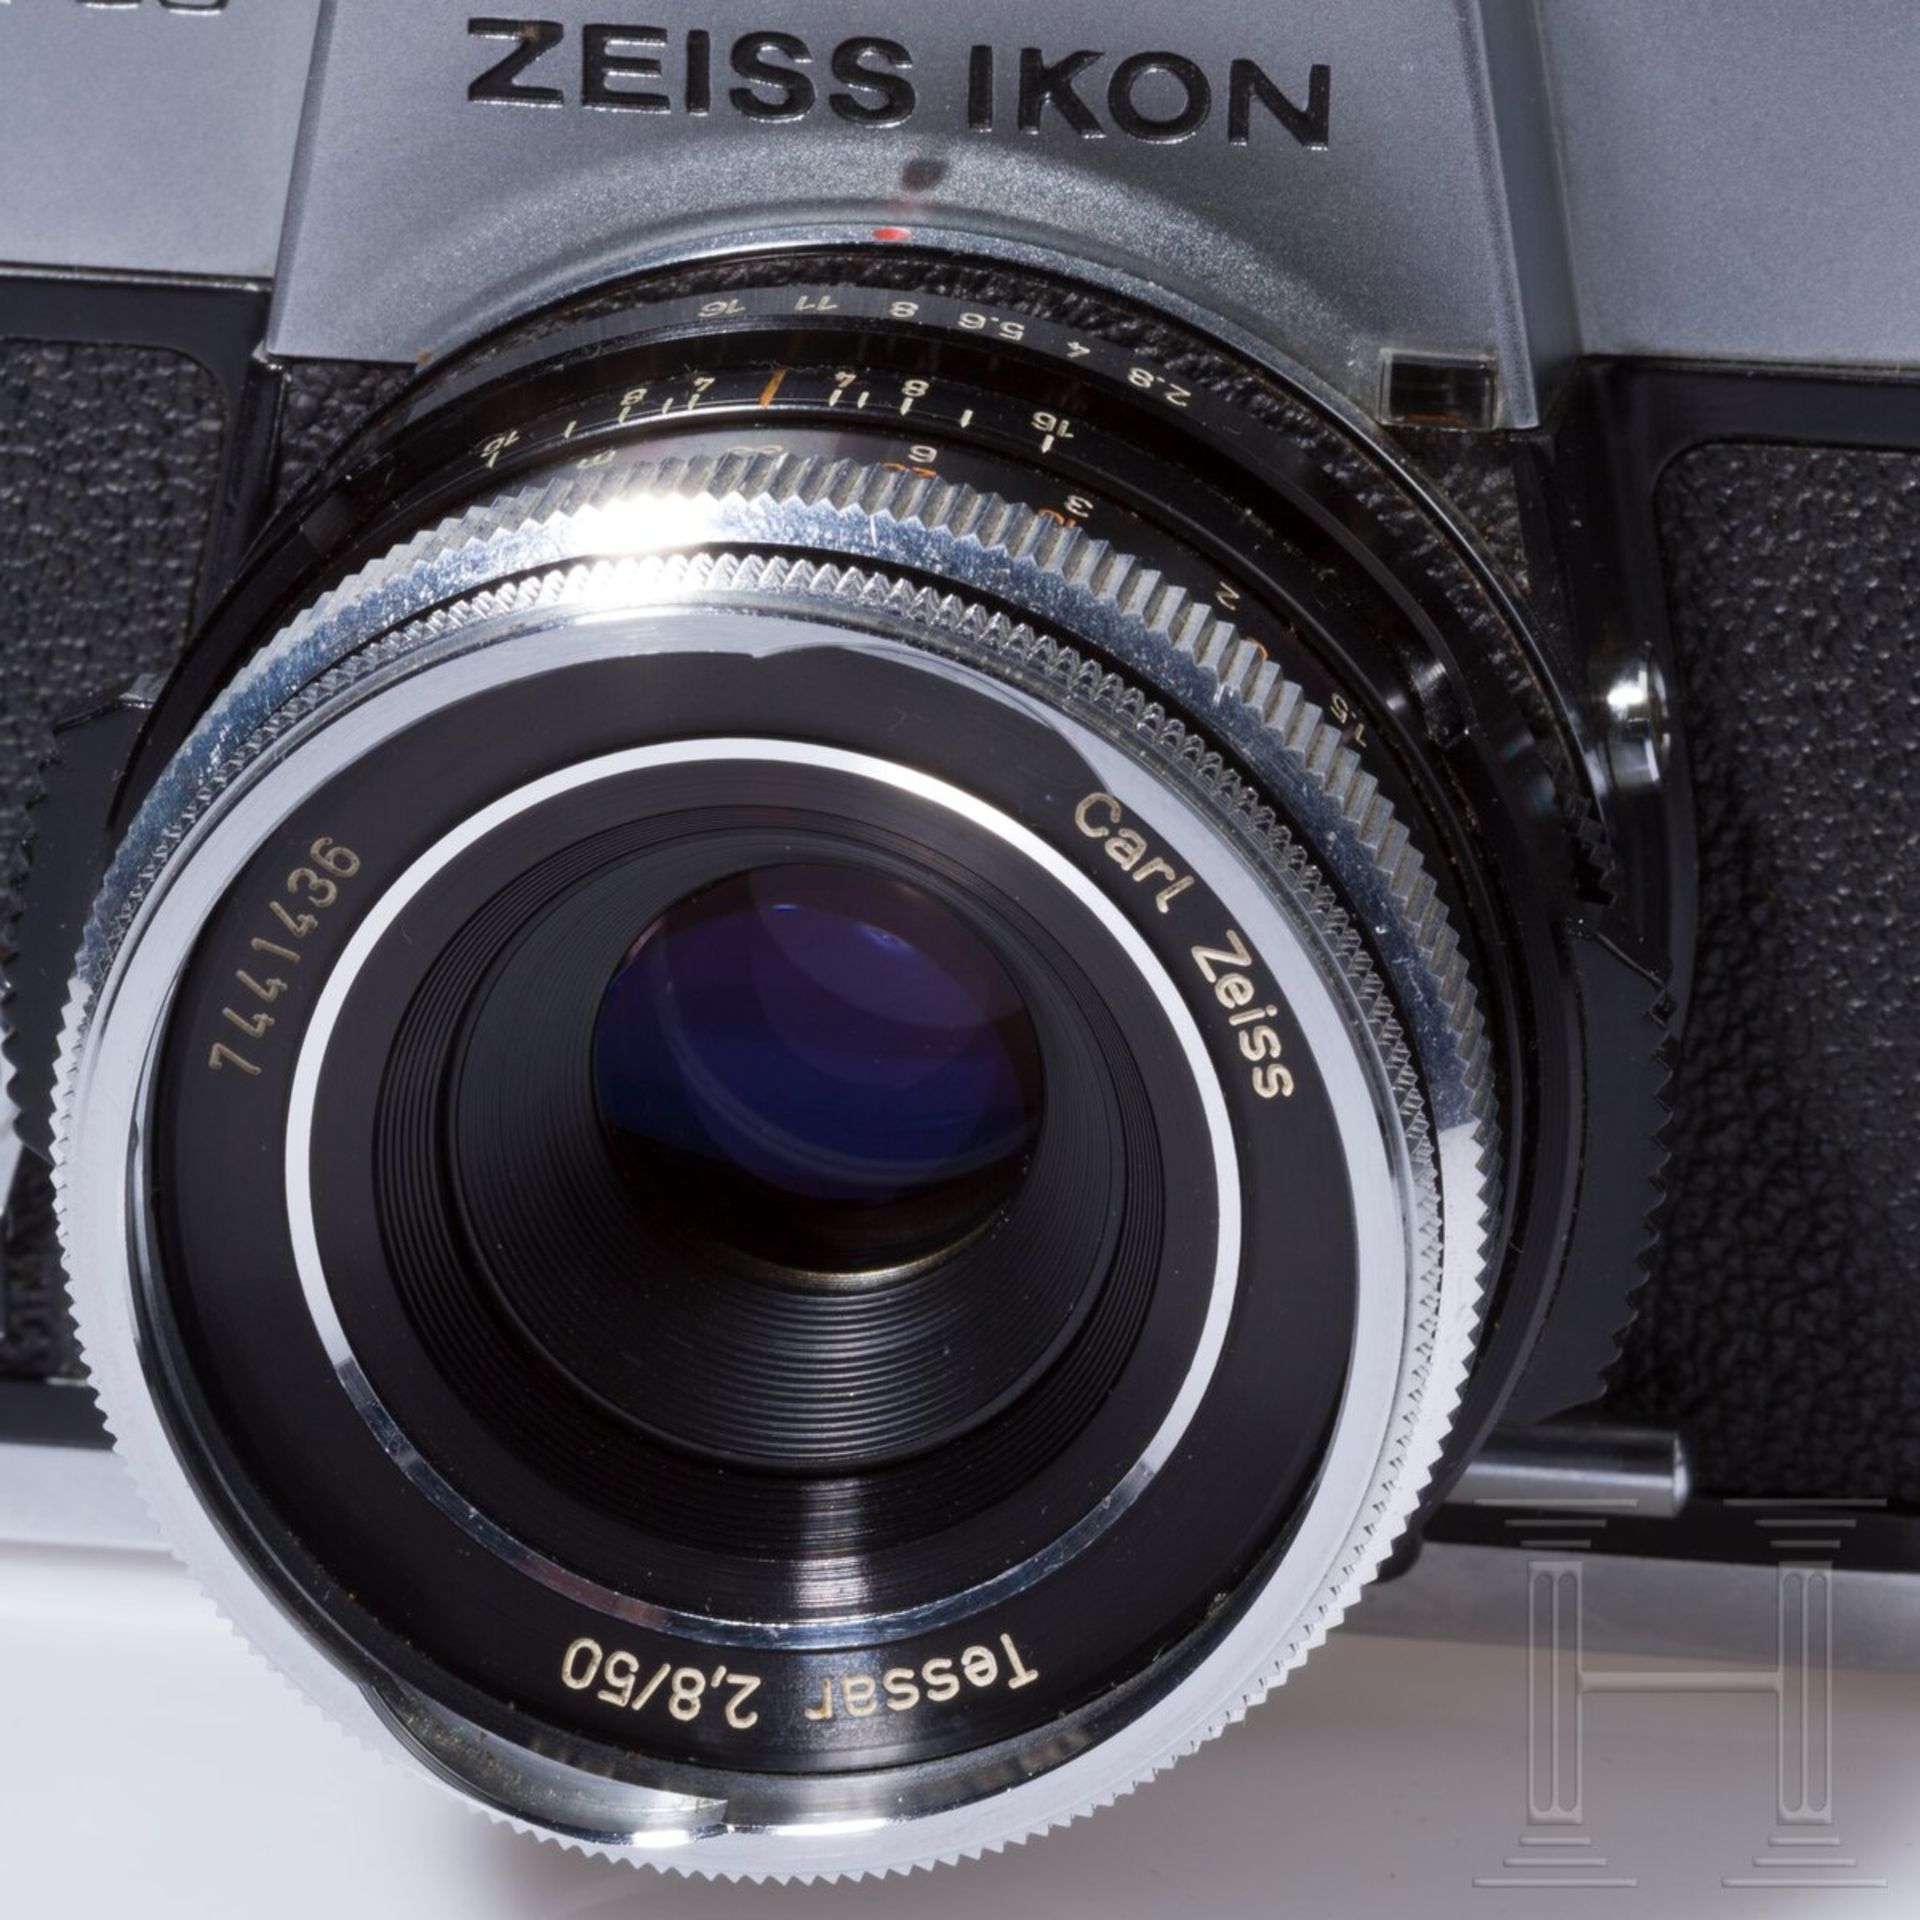 Zeiss Ikon SL 706 mit Carl Zeiss Tessar 50 mm, Skoparex 35 mm, Super-Dynarex 135 mm - Bild 6 aus 11